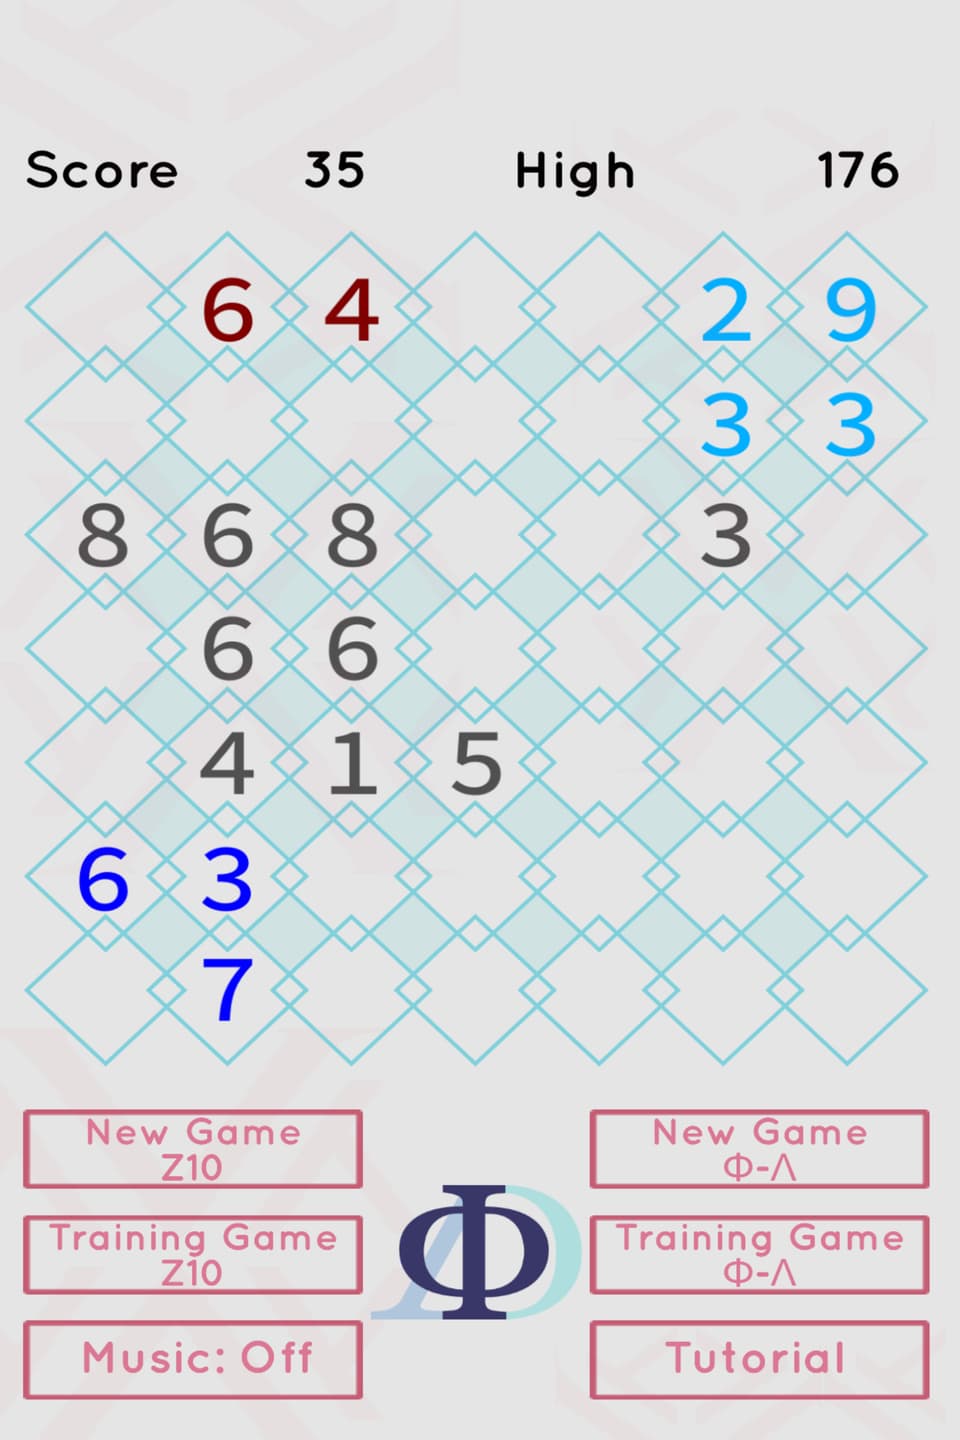 Summen checken: Rot 6+4=10, Hellblau 3+3+2+9=17 (3 fehlen; kein Problem!), 6+3+7=16 (4 fehlen, kein Problem!). 